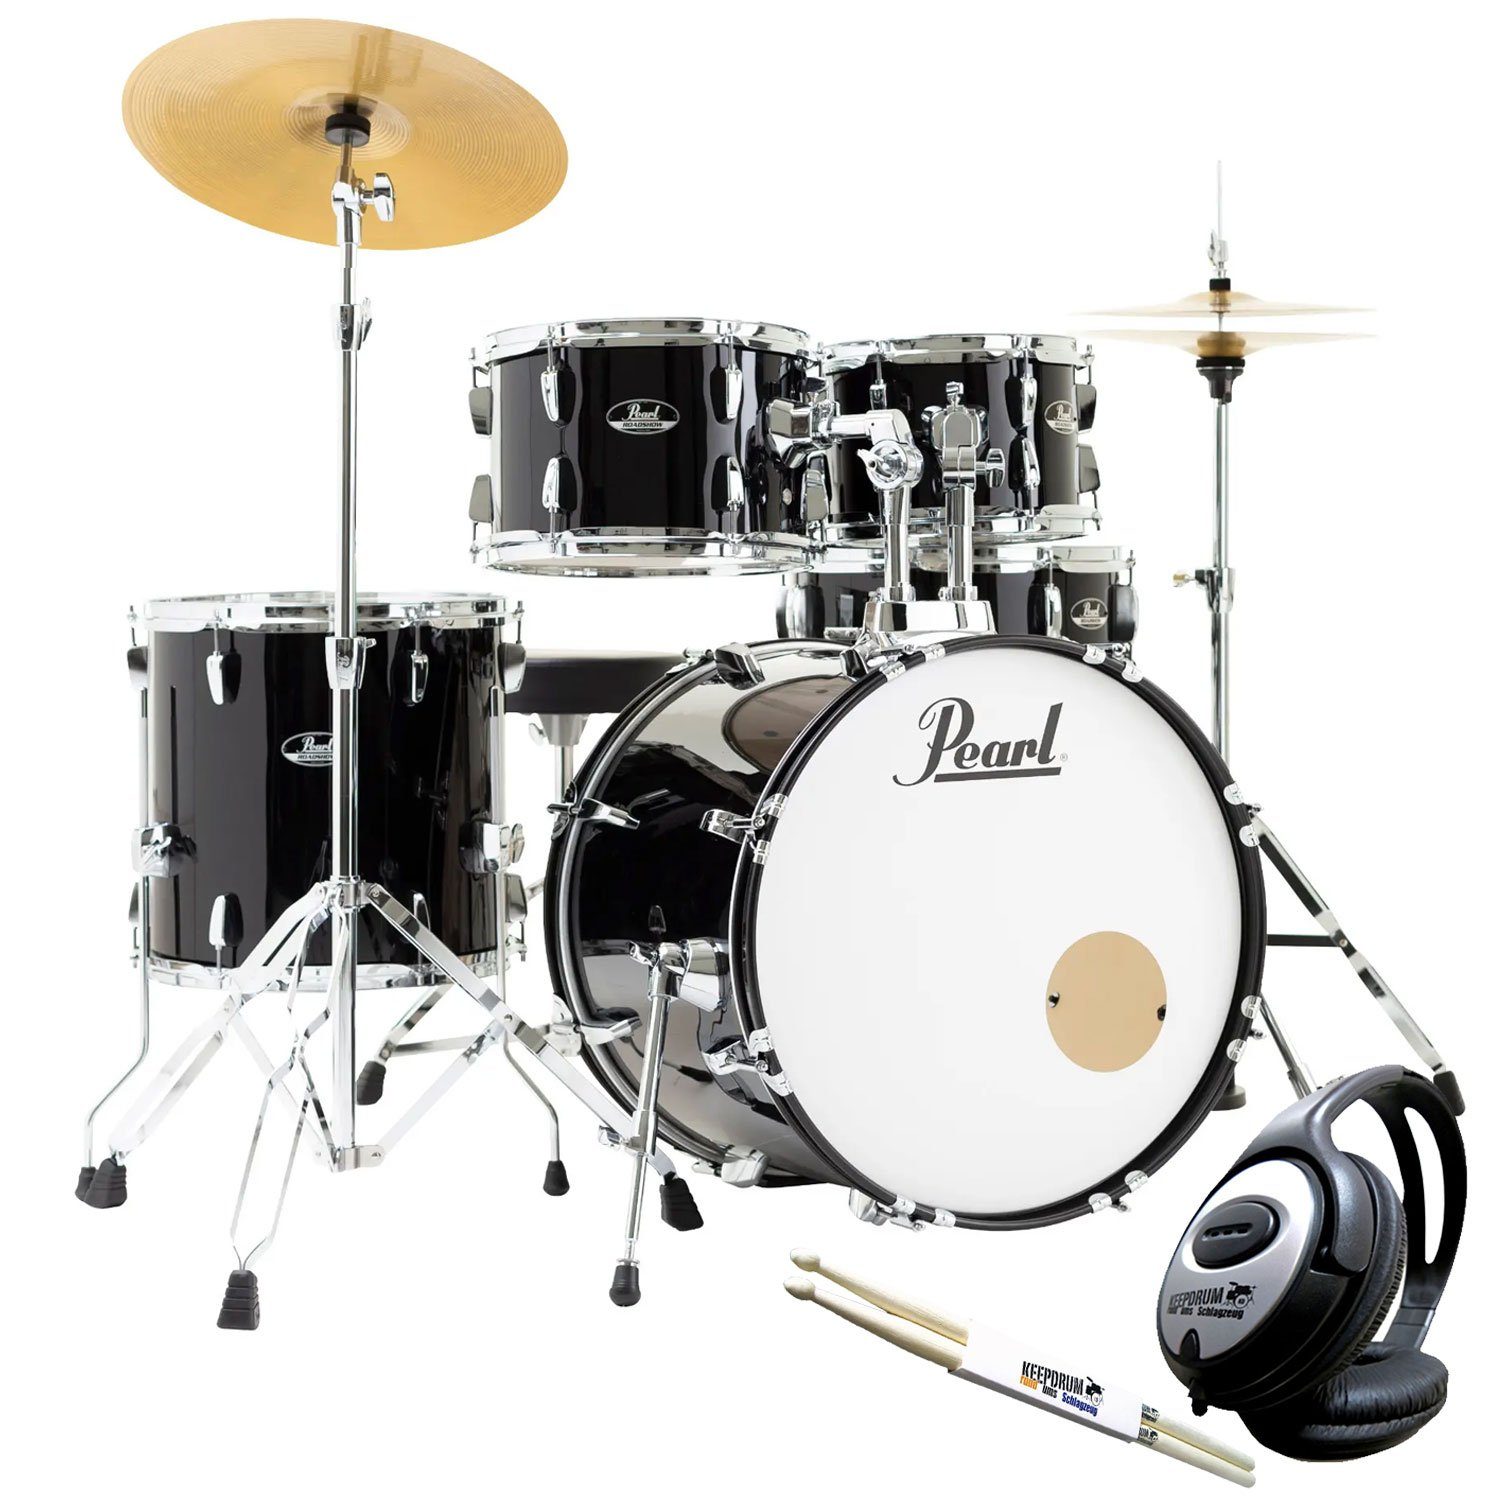 Pearl Drums Schlagzeug Roadshow 20 mit Kopfhörer und Sticks